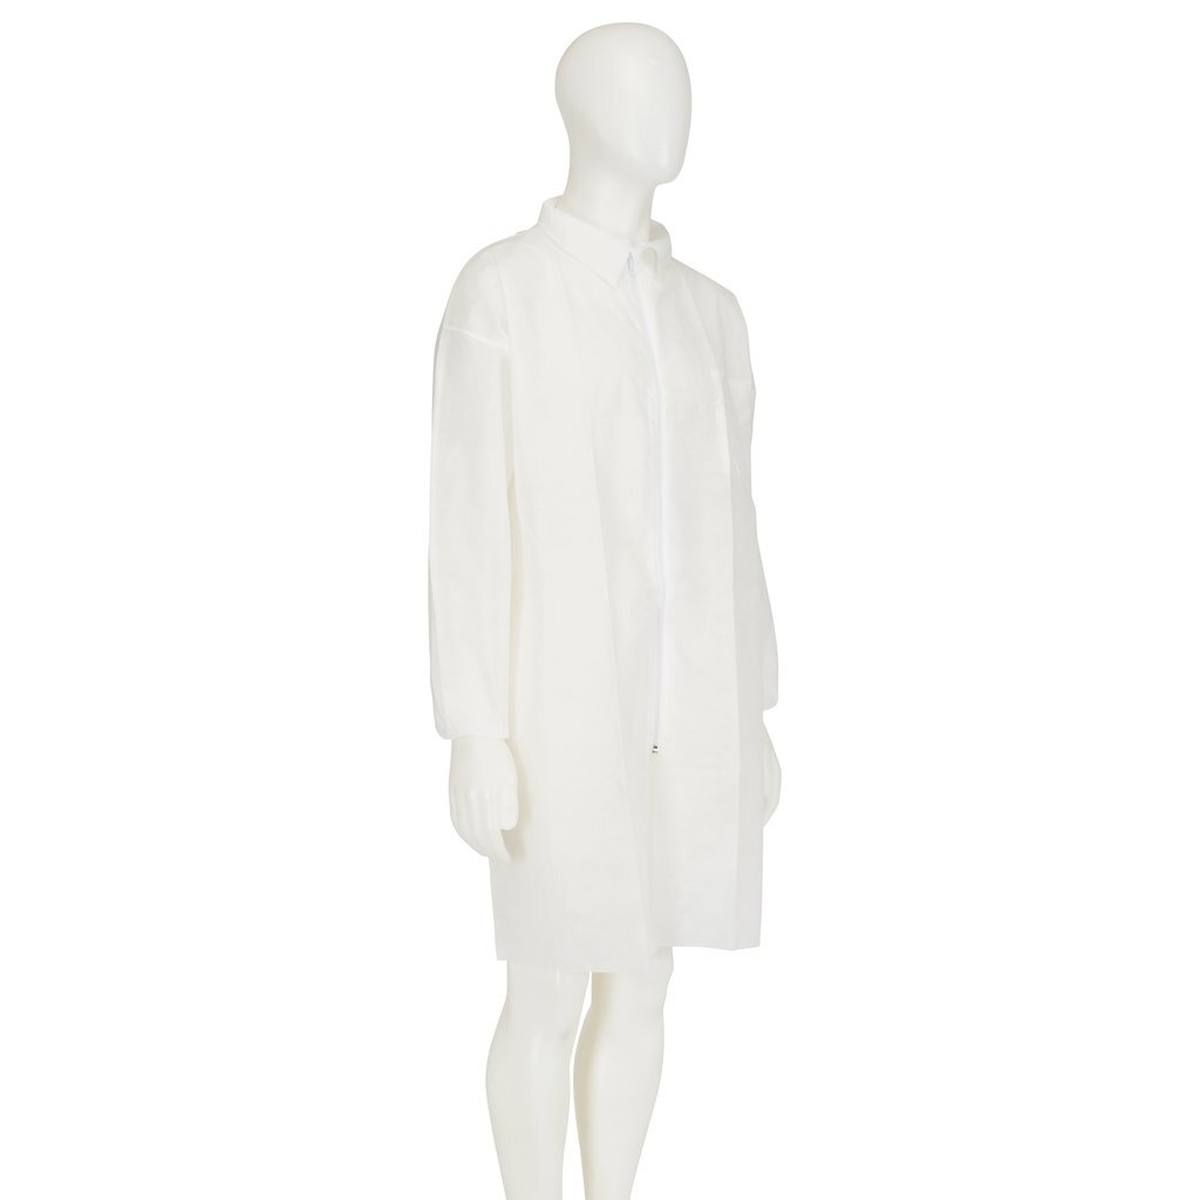 3M 4400 Manteau, blanc, taille XL, matériel 100% polypropylène, respirant, très léger, avec fermeture éclair